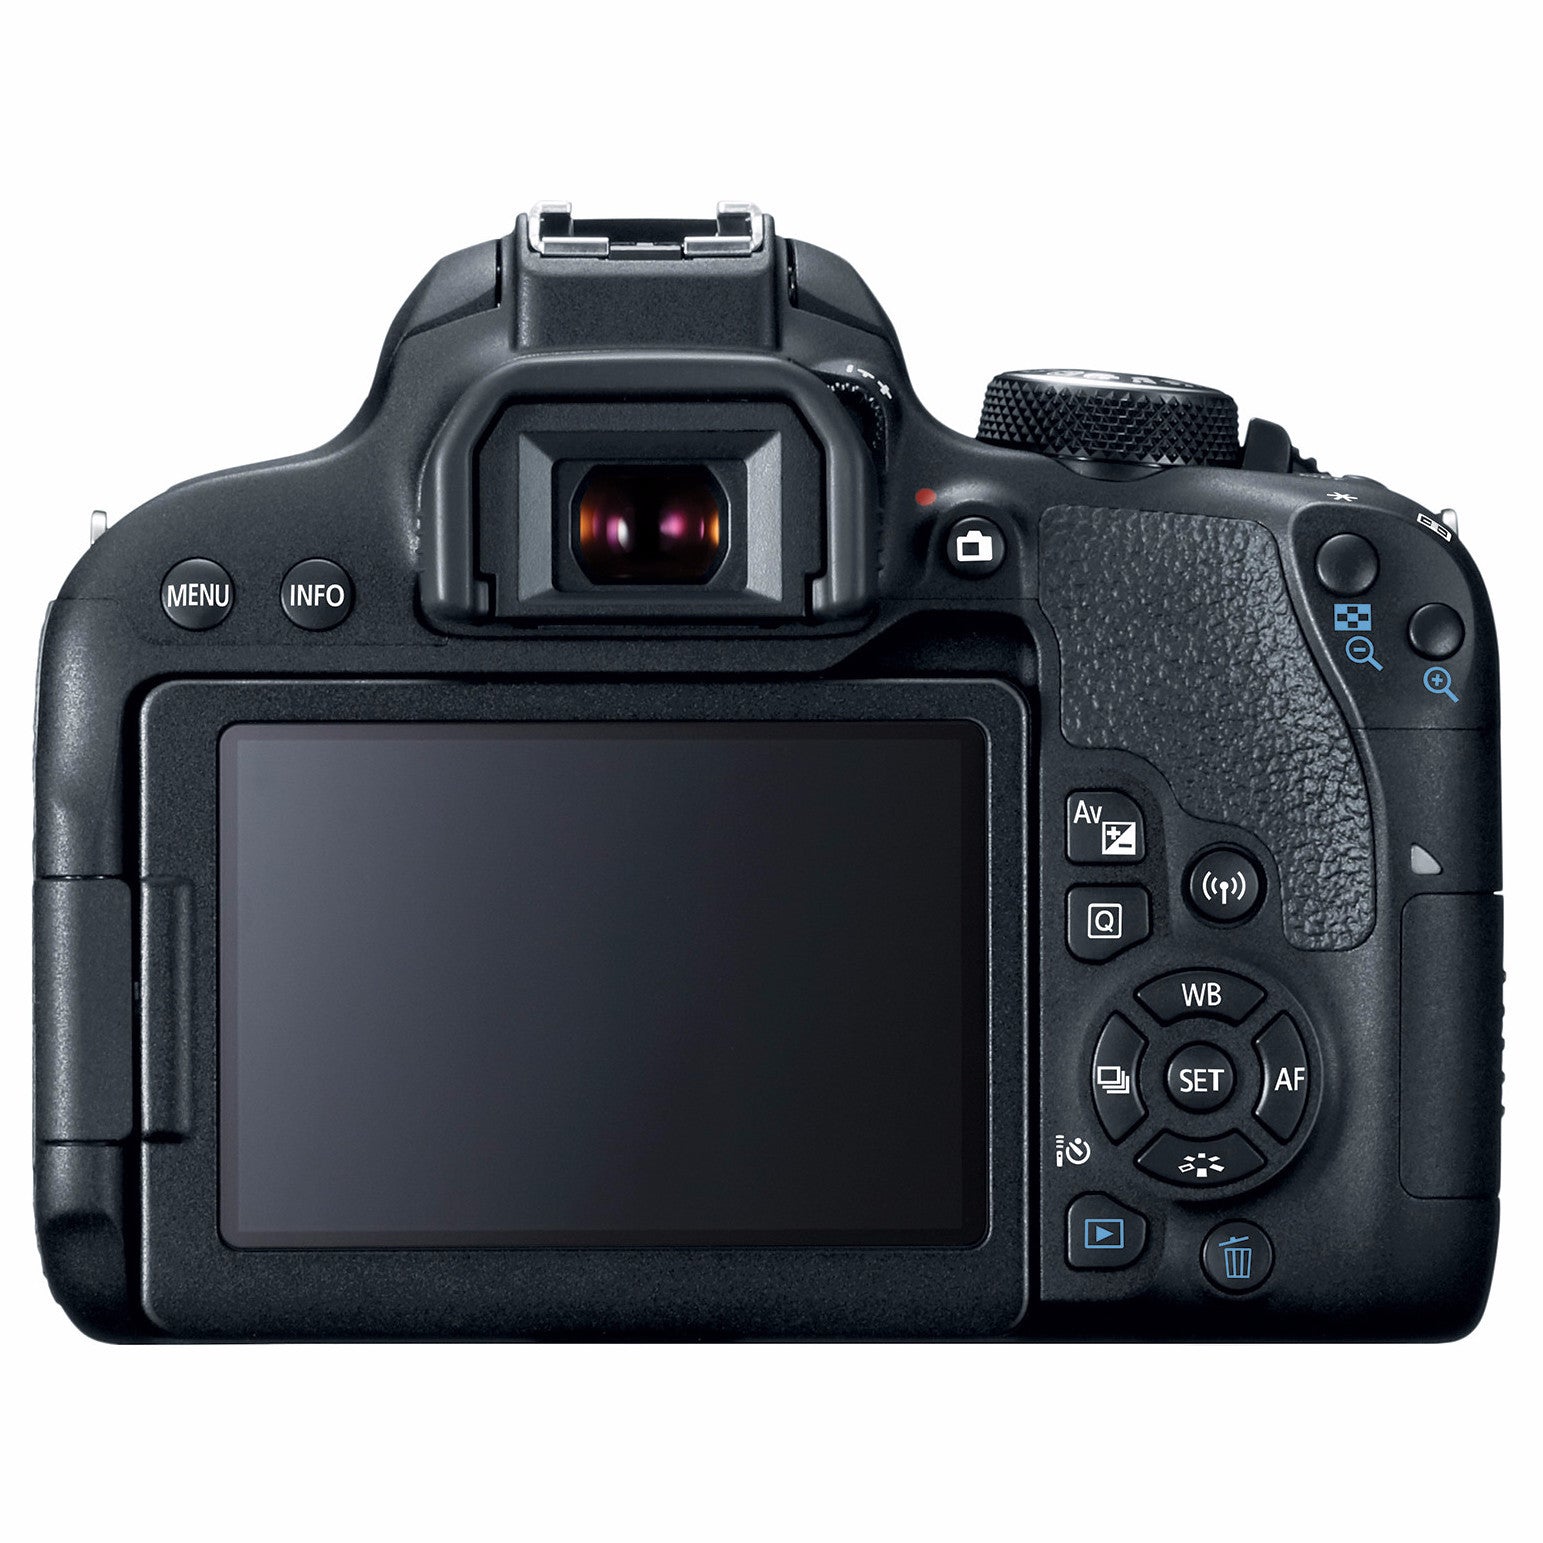 Canon EOS Rebel T7i DSLR Camera Body